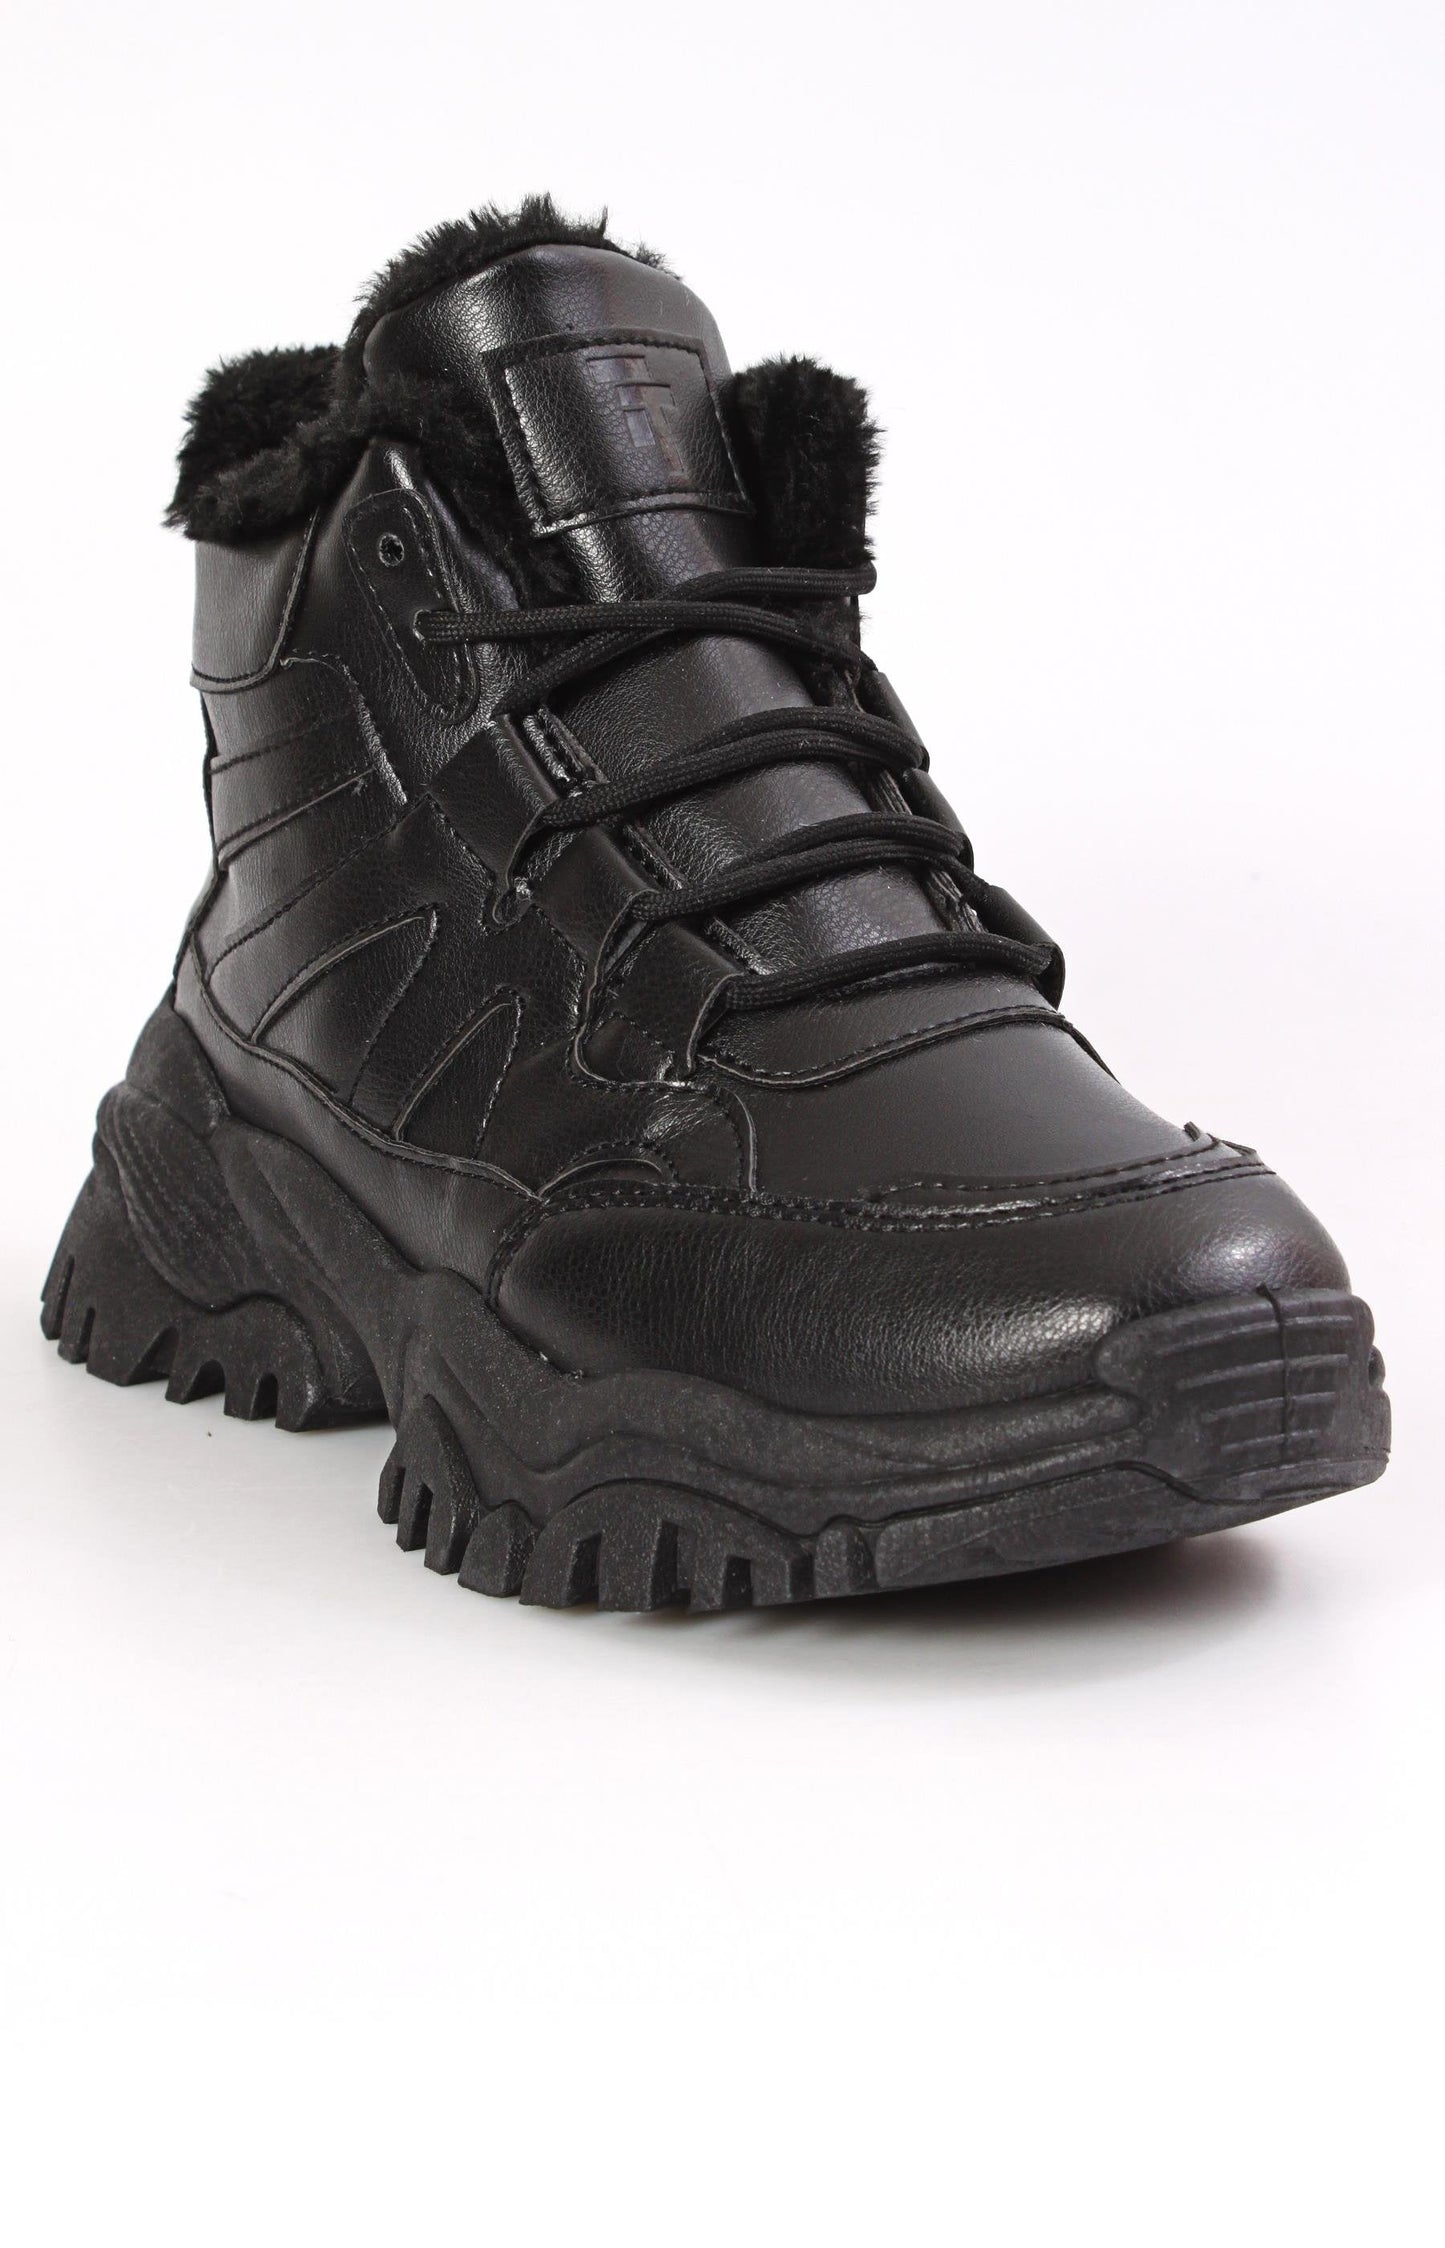 Ladies' Outdoor Boots - Black